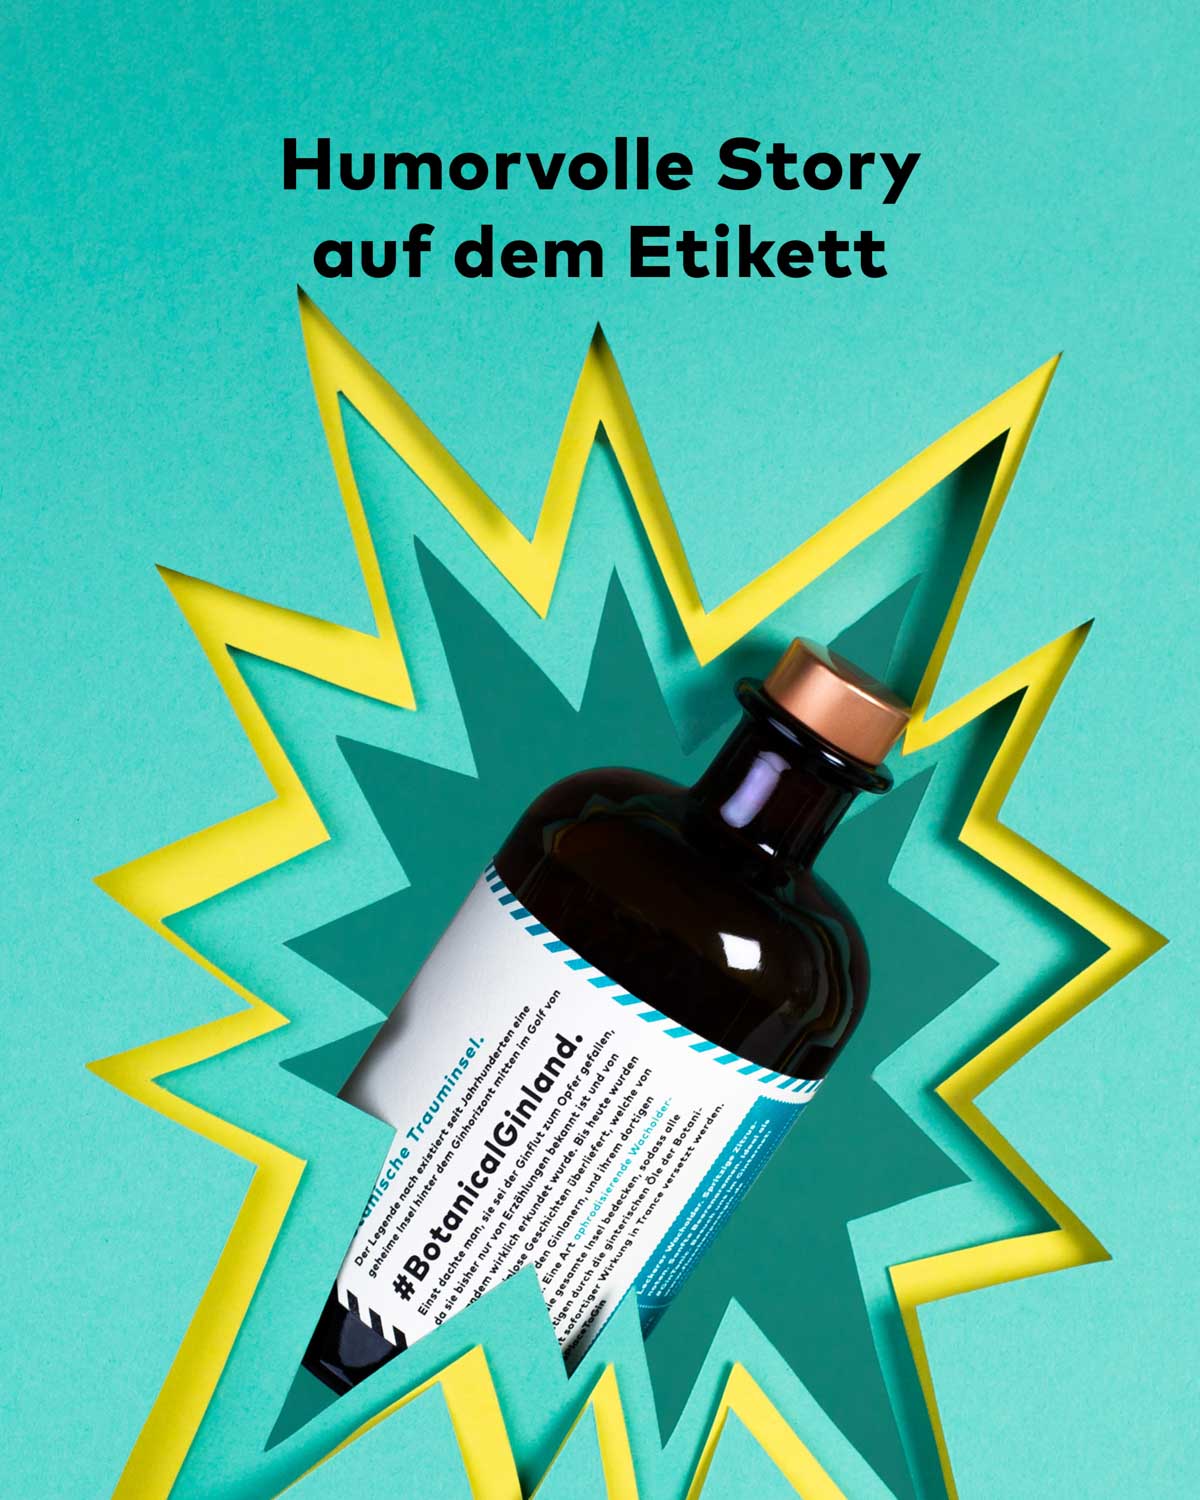 Unser Flaschenpost Gin "Gib deinem Leben einen Gin" hat eine humorvolle Story auf der Rückseite des Etiketts. Schmunzeln und Lacher sind garantiert. 